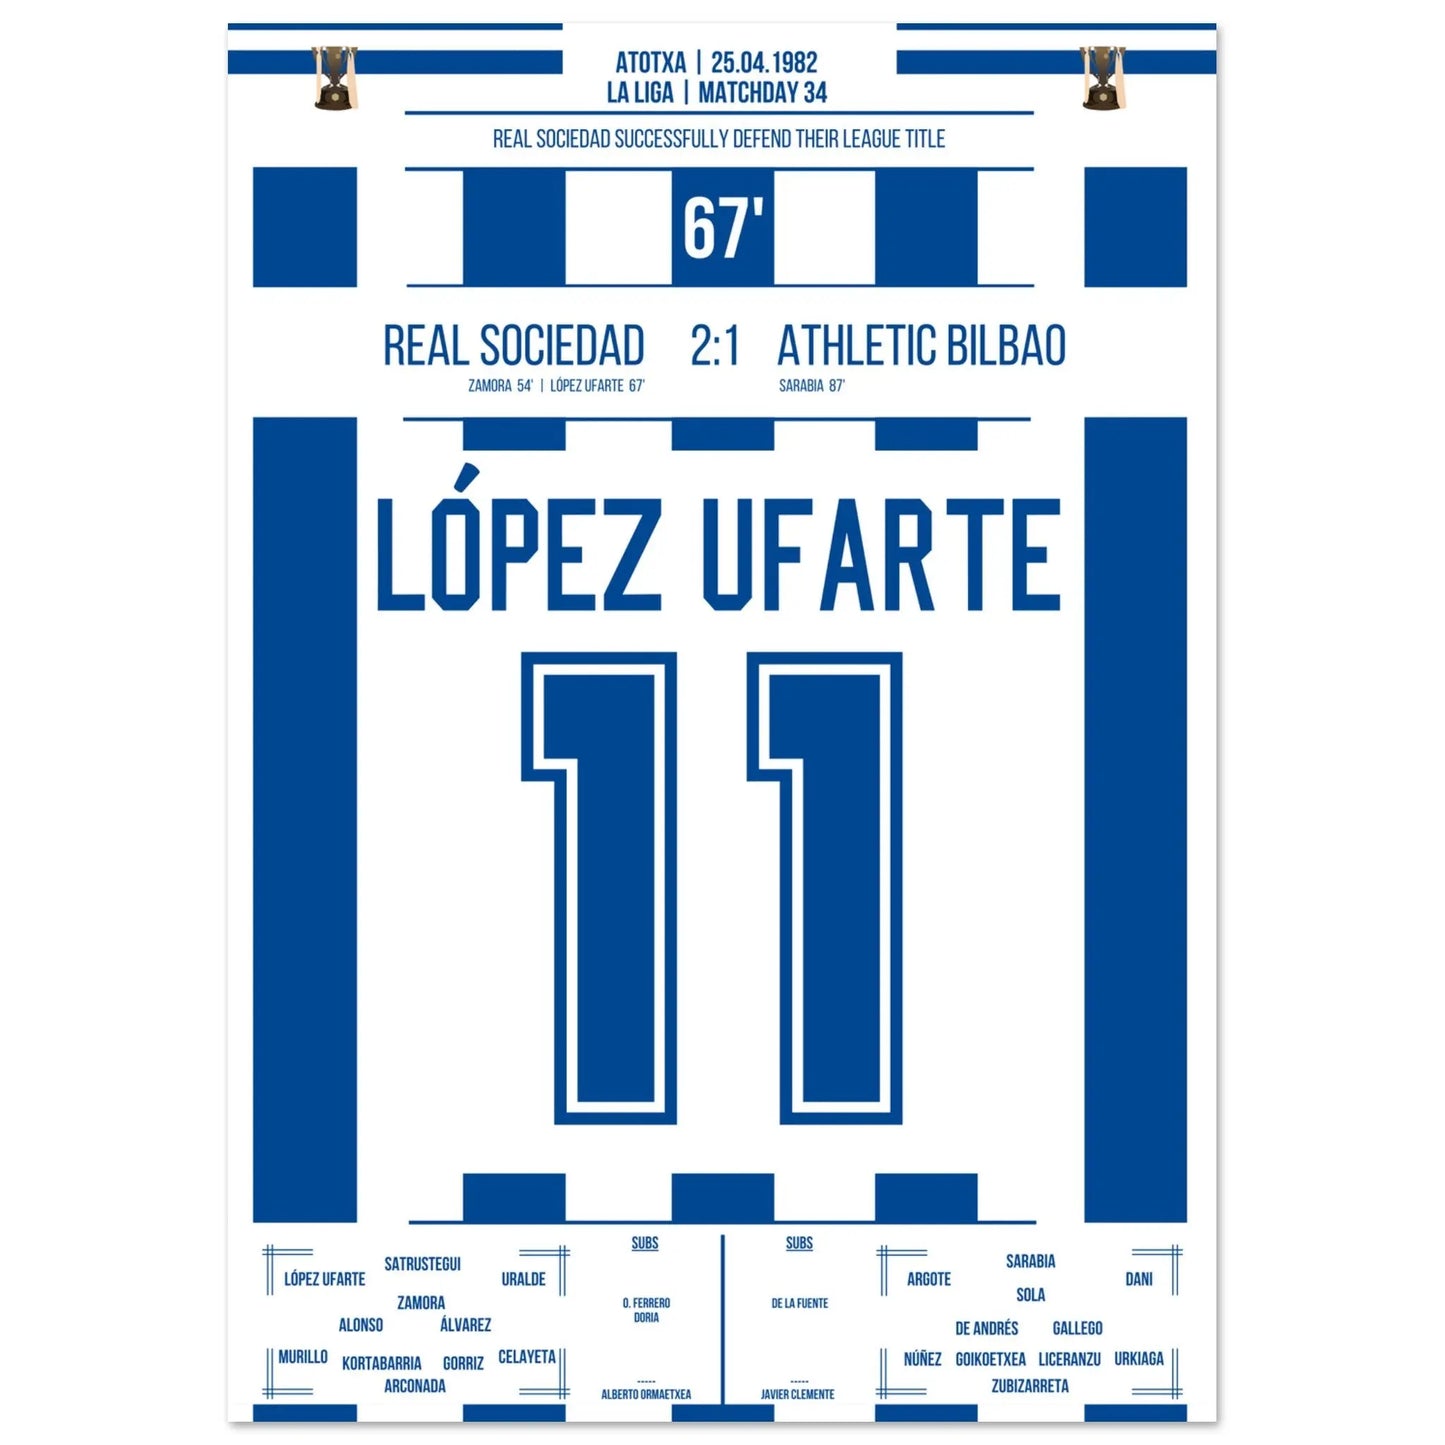 El objetivo de López Ufarte para defender su título en 1982